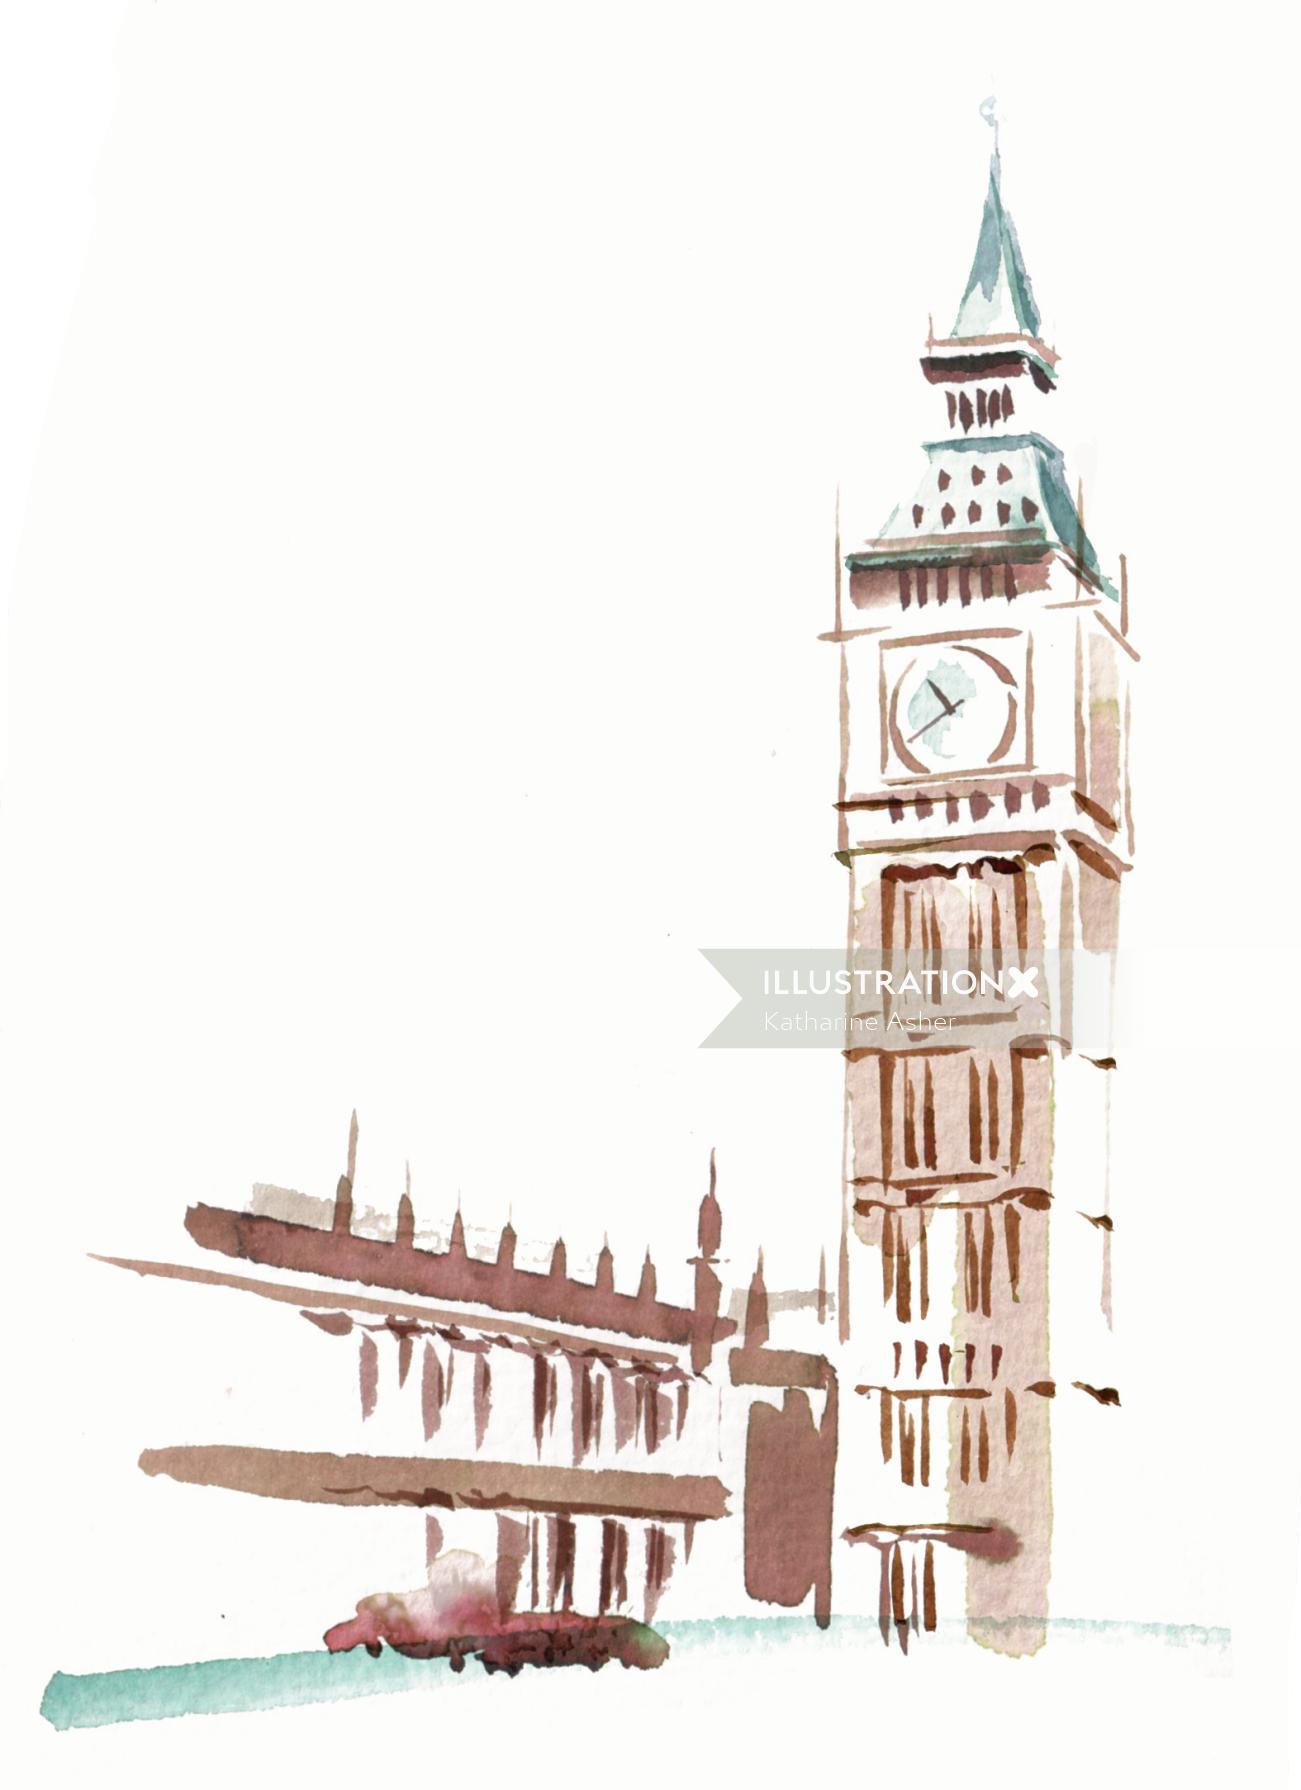 钟楼插图由Katharine Asher